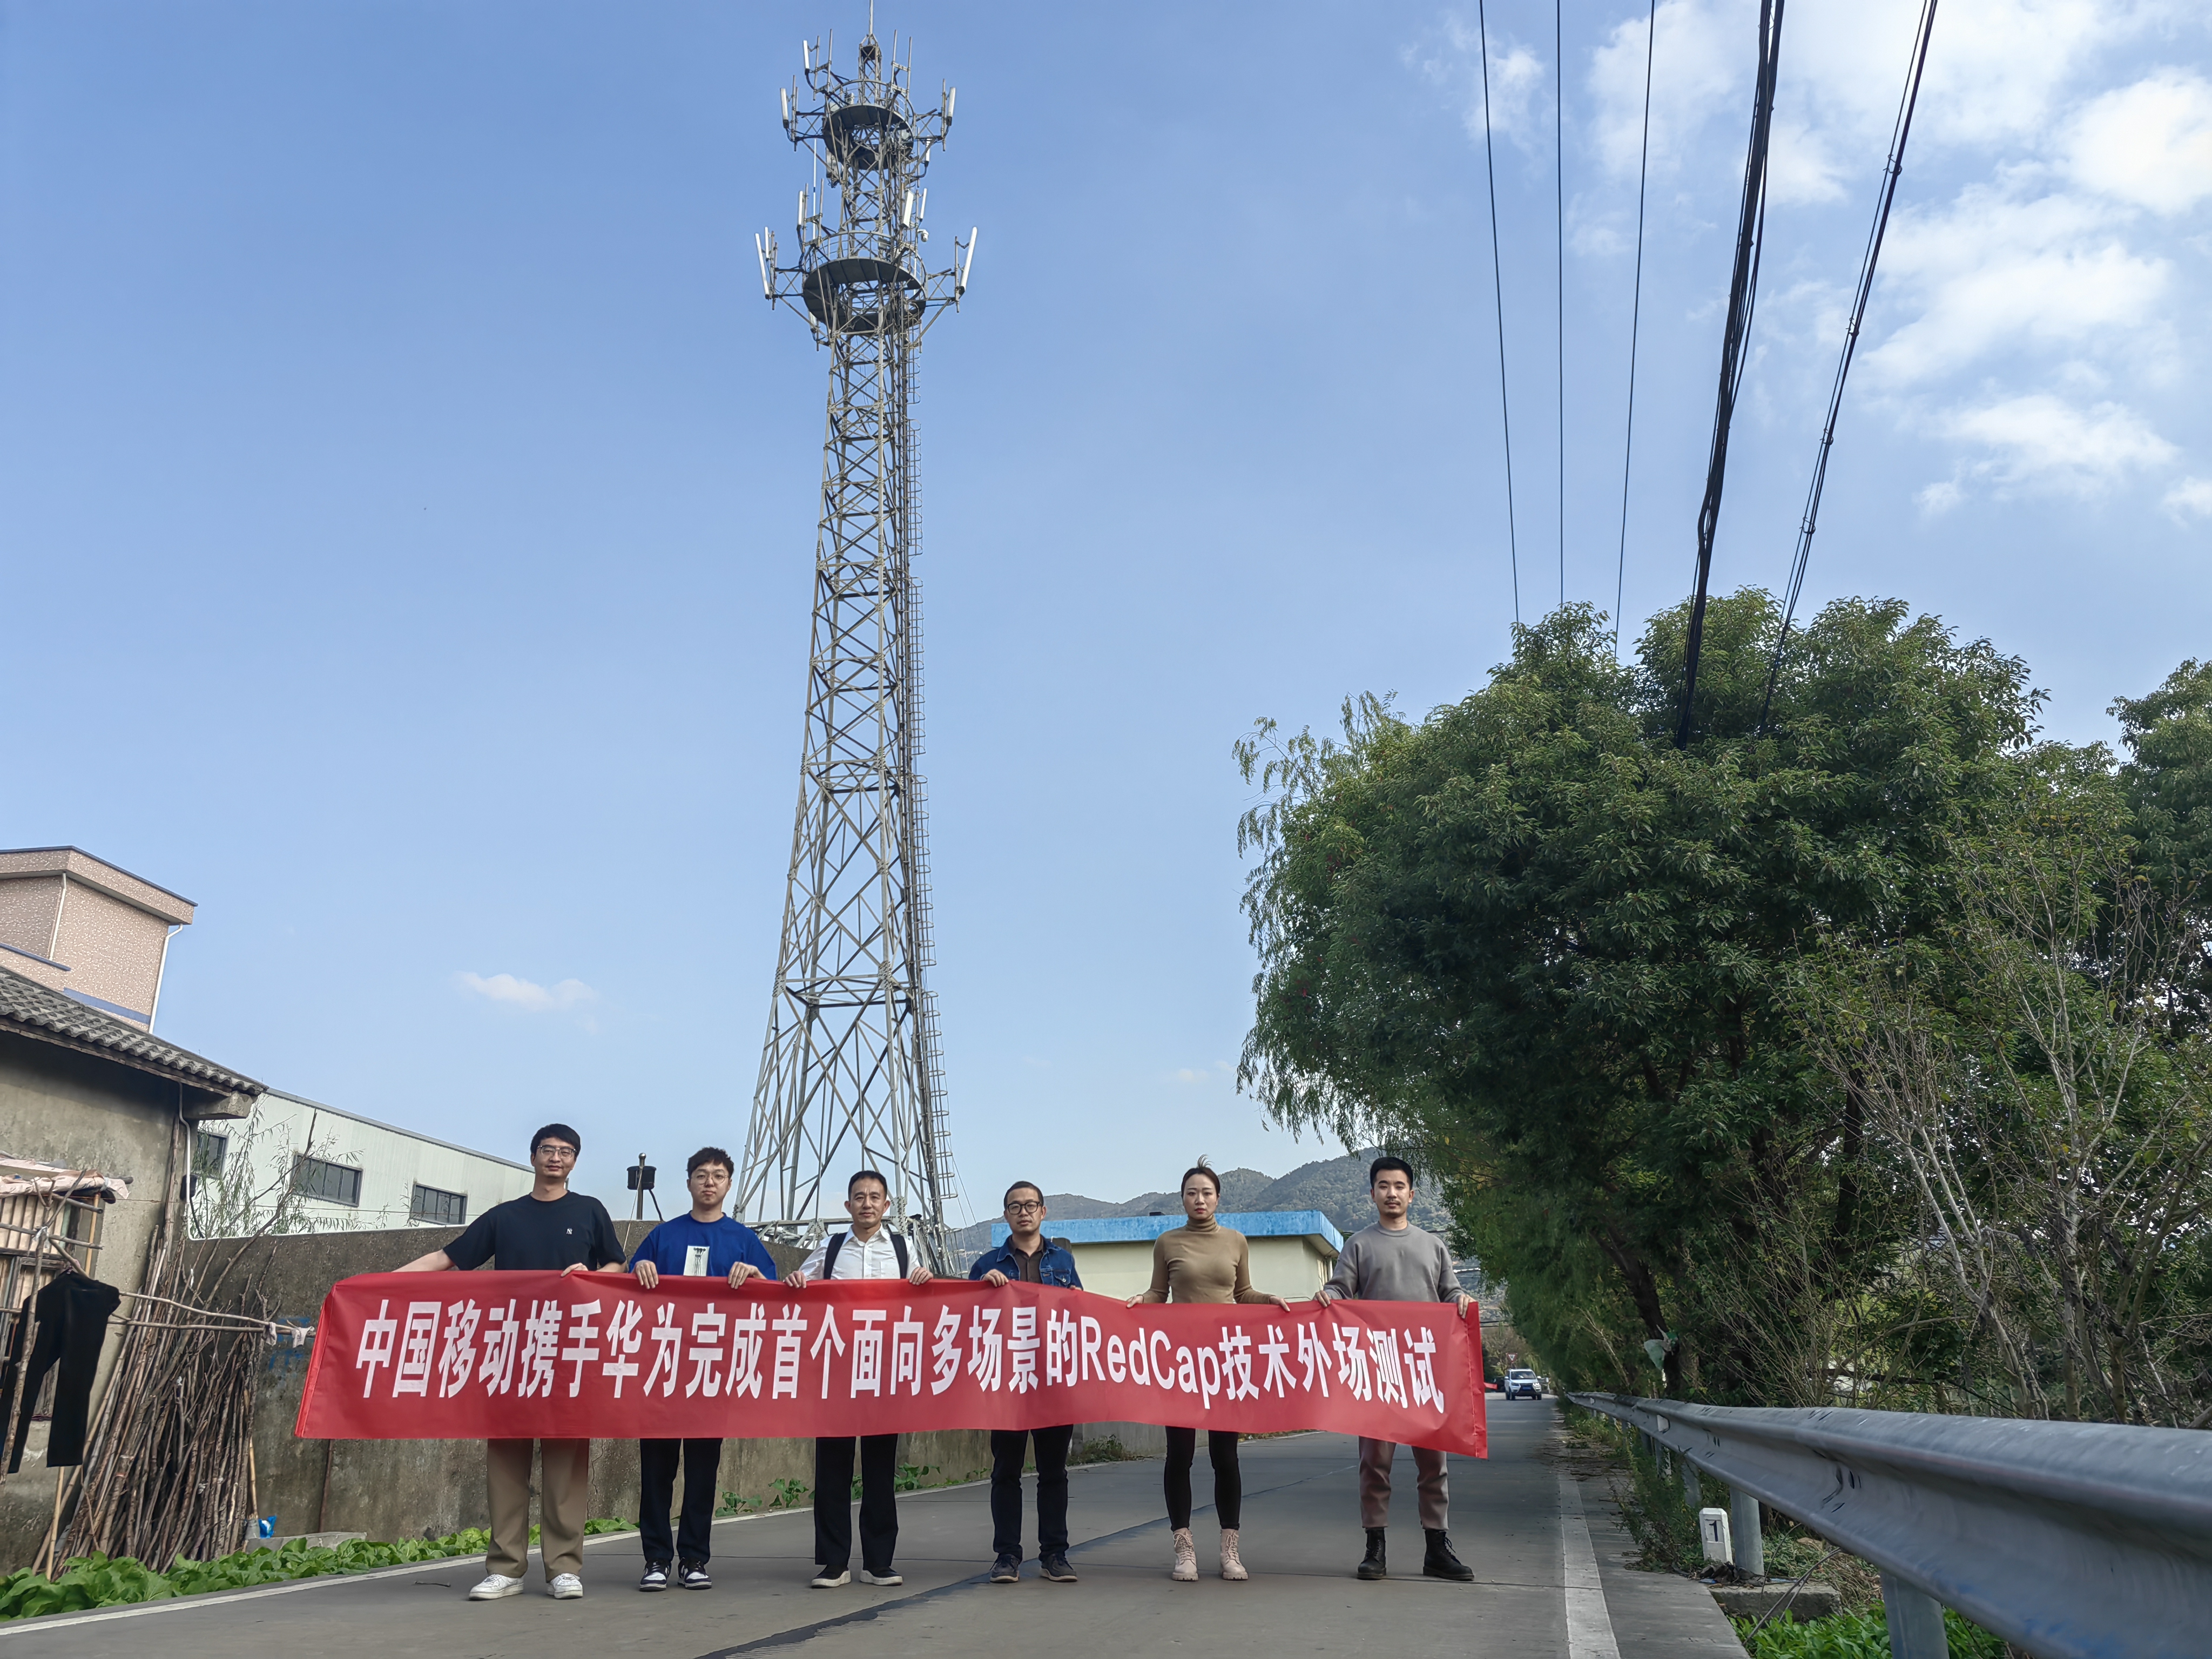 宁波移动完成全省首个5G RedCap单站性能外场测试  5G大连接即将成为现实